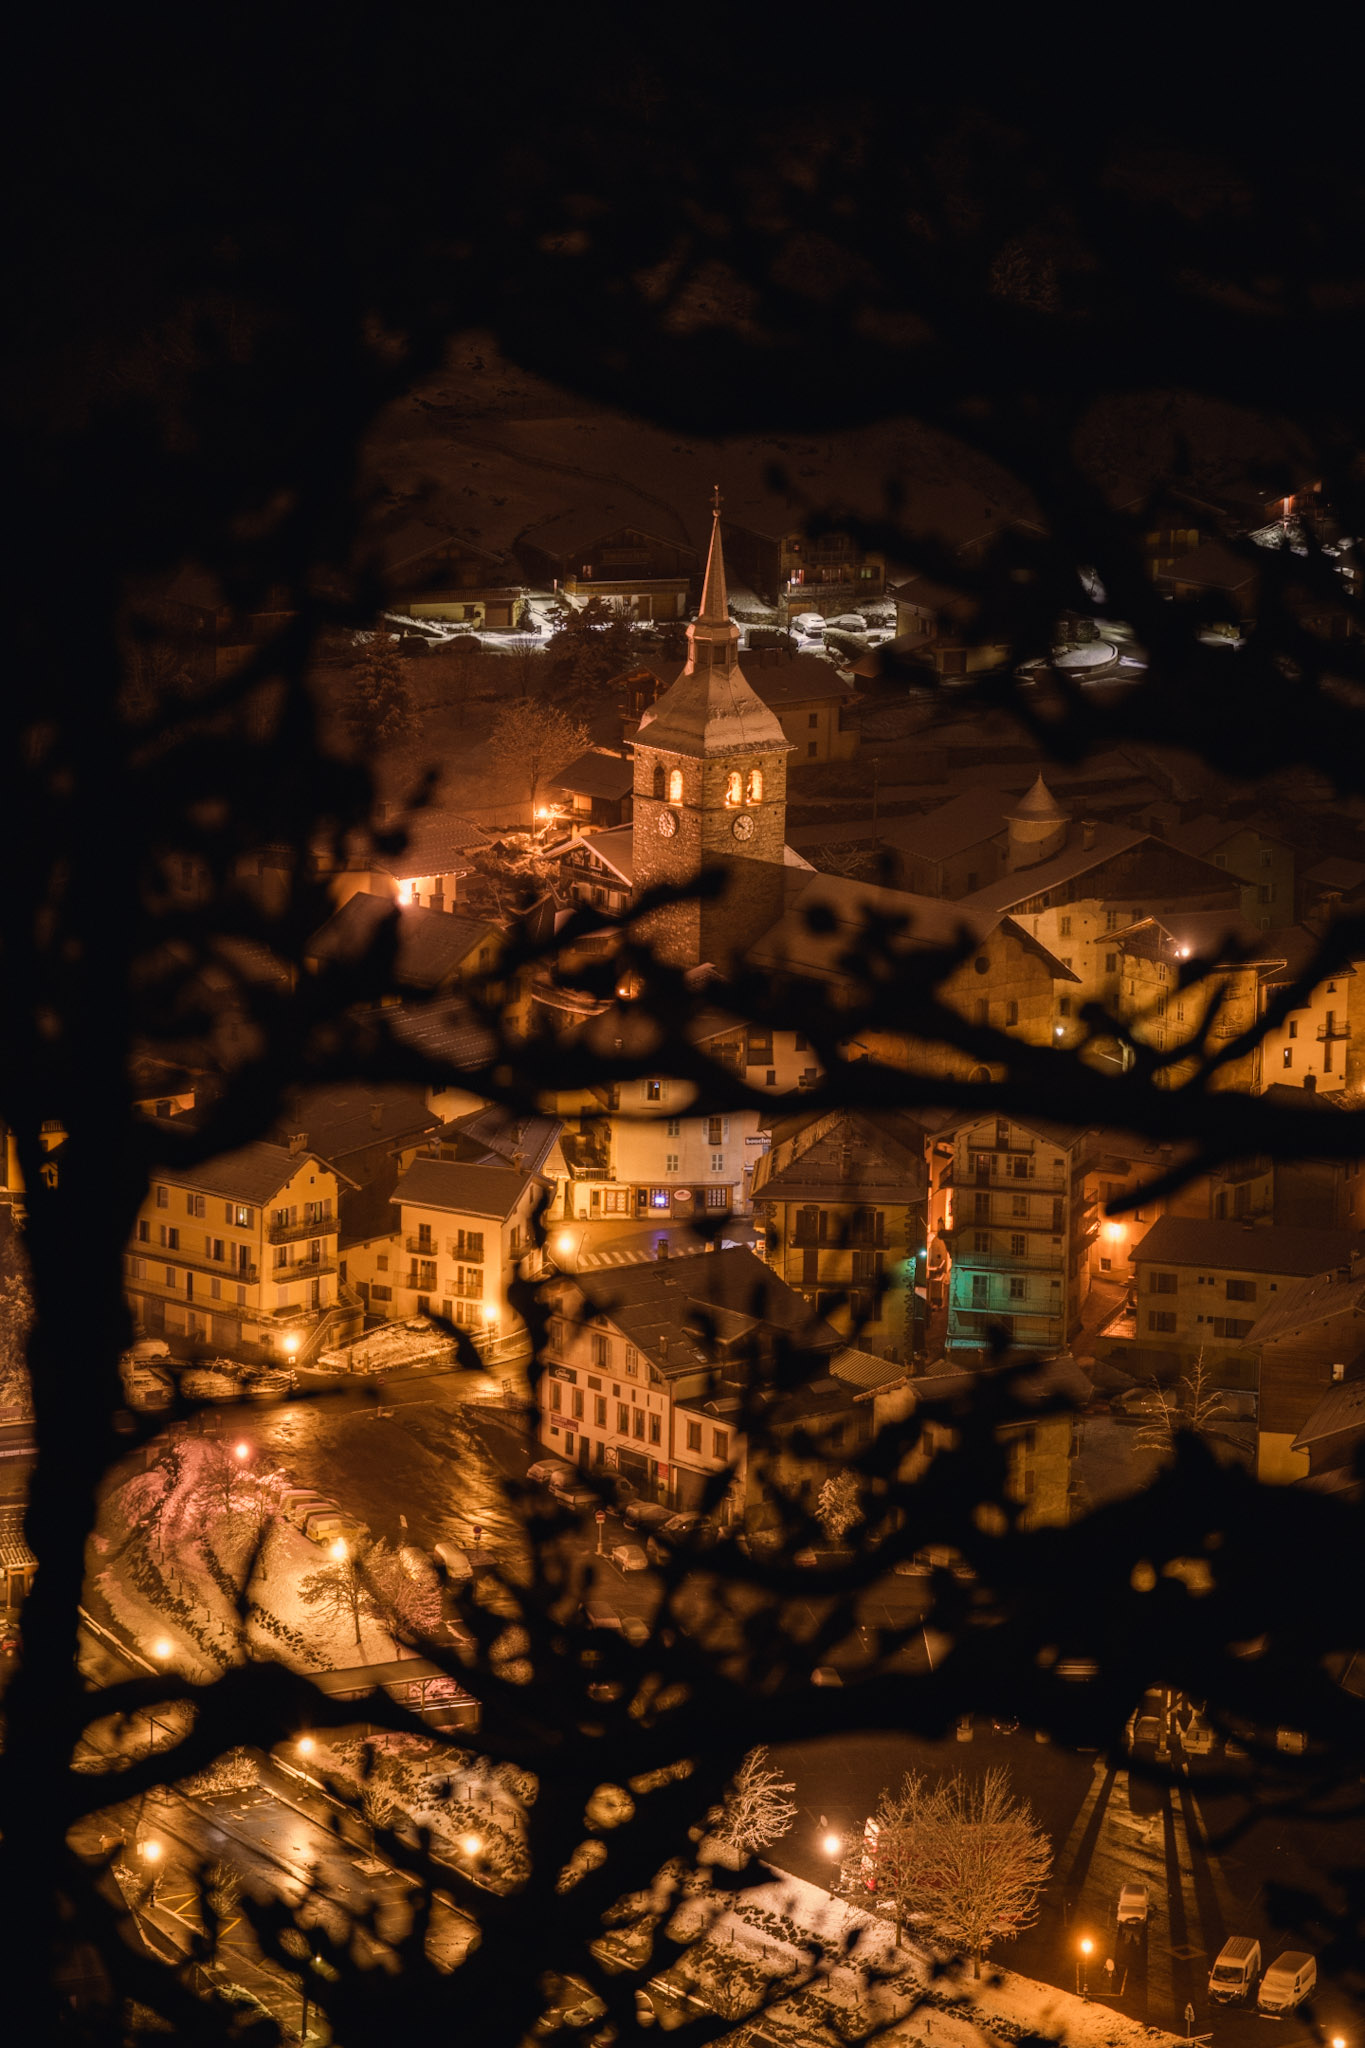 beaufort village under the snow by night